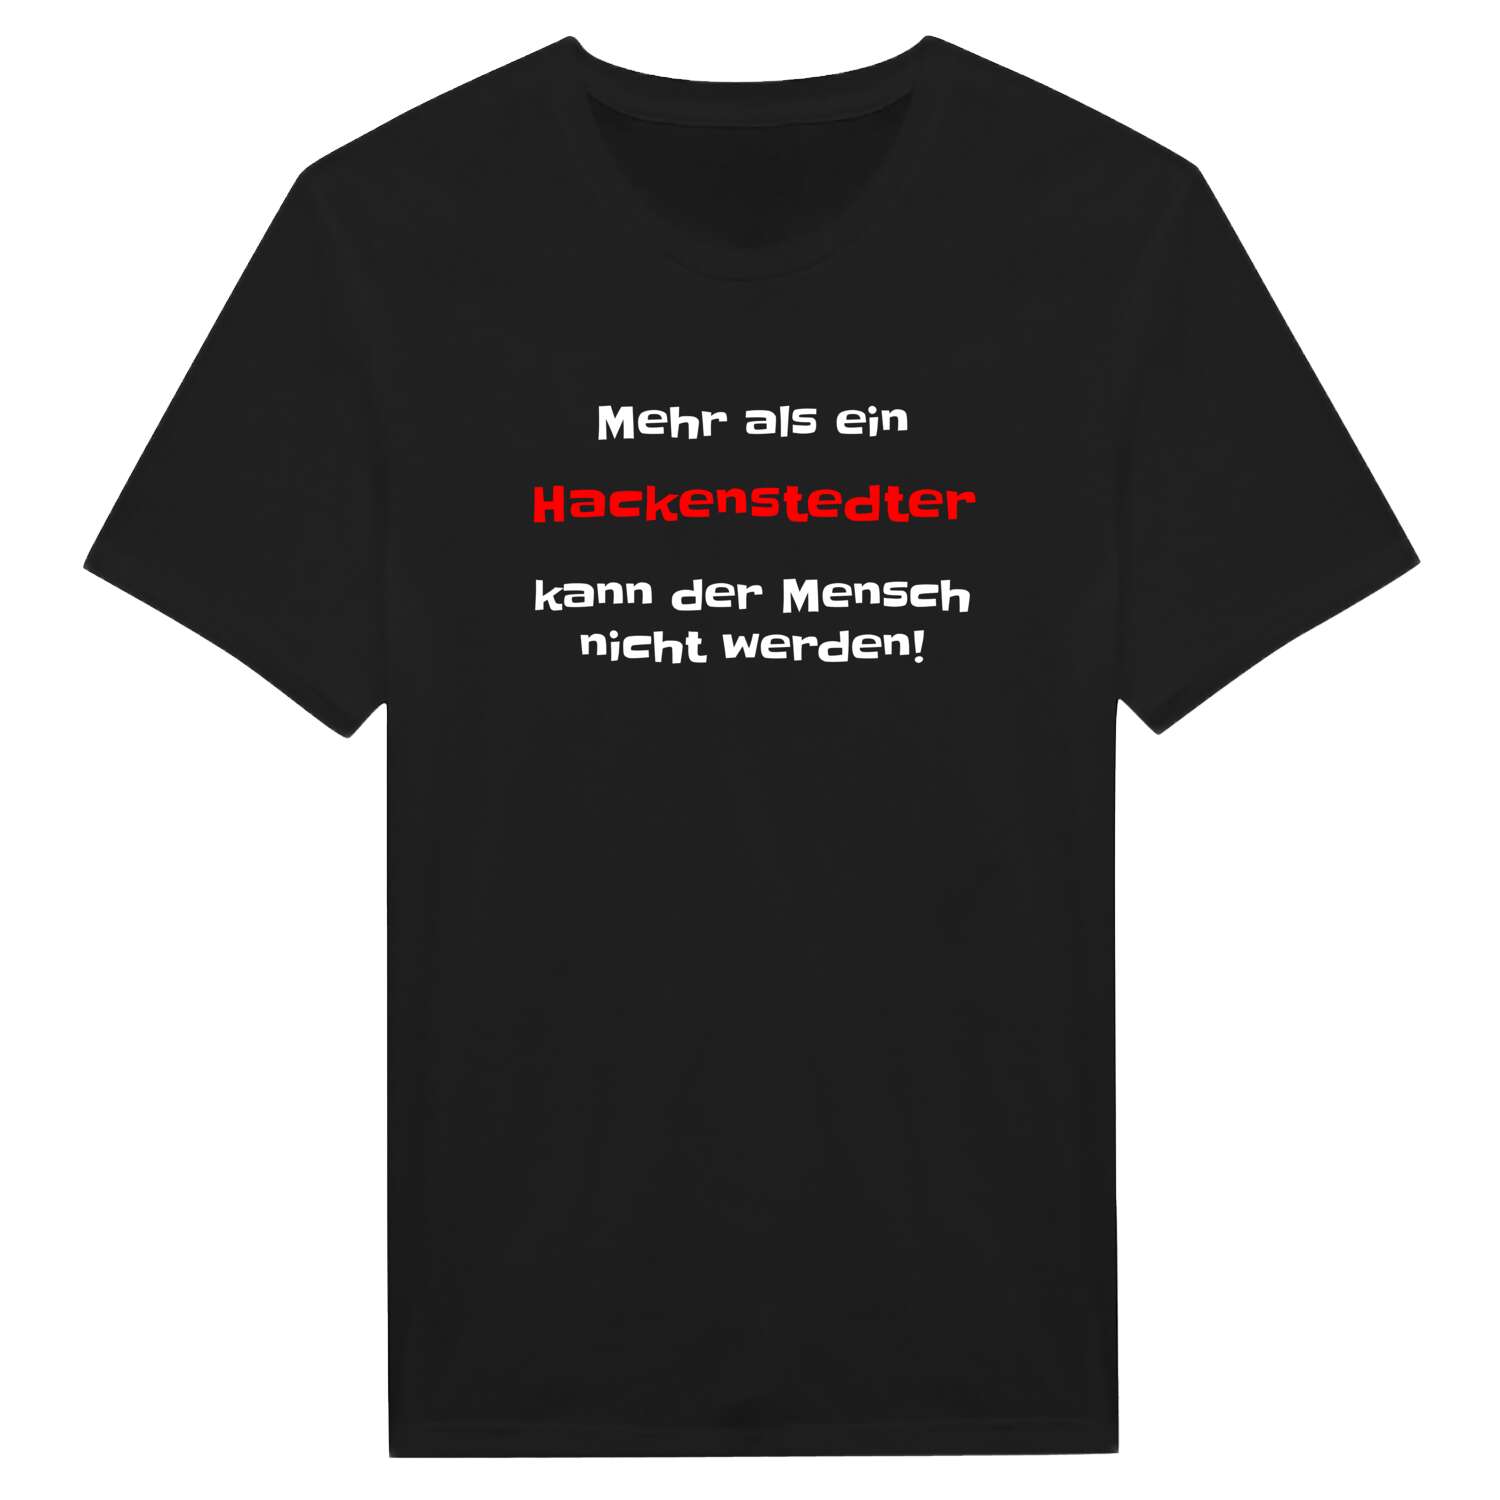 Hackenstedt T-Shirt »Mehr als ein«